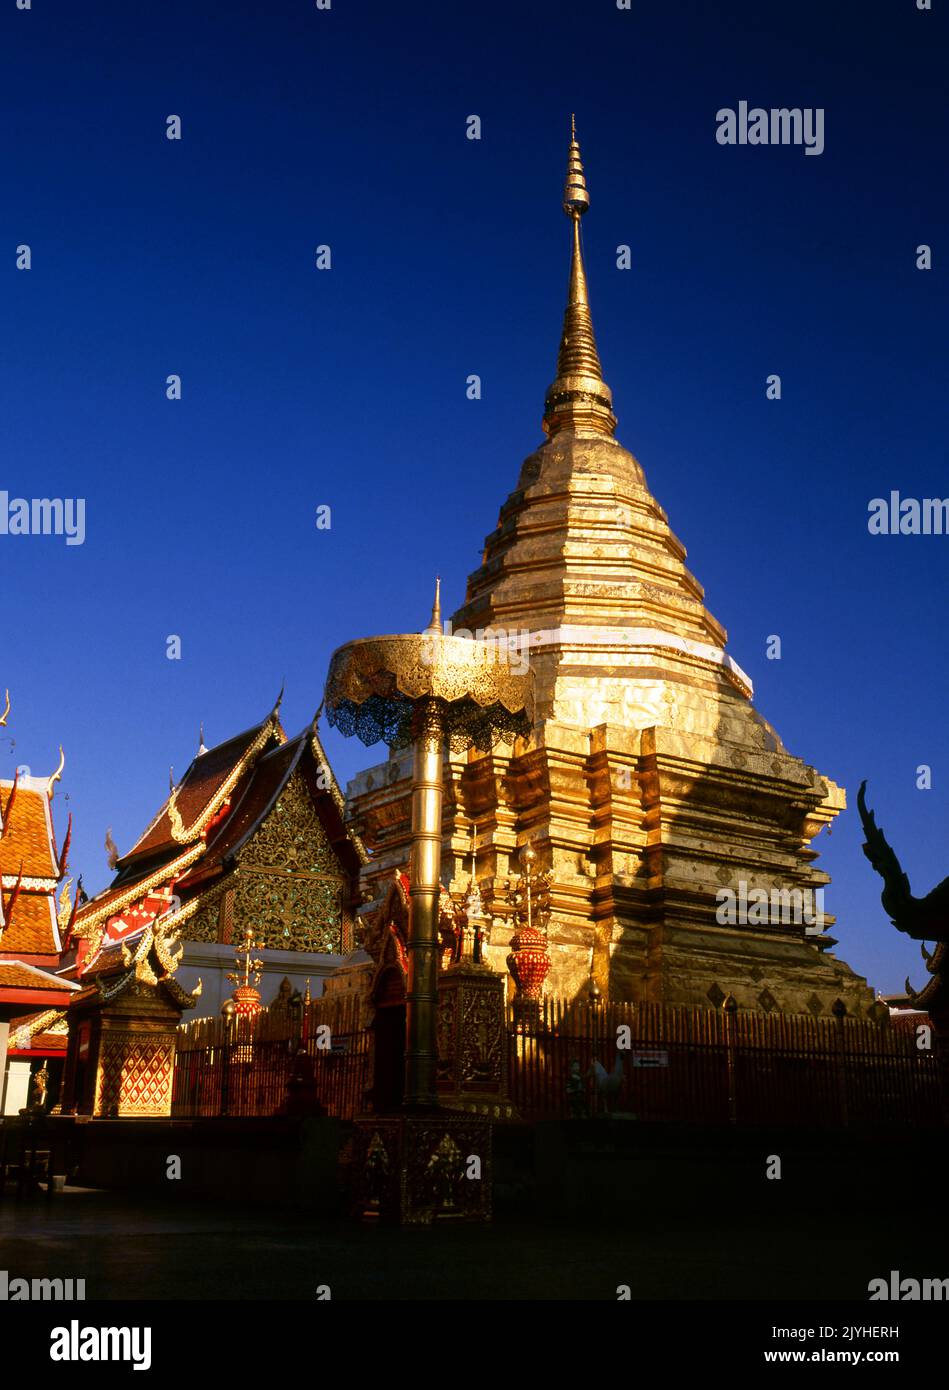 Thaïlande: Wat Phrathat Doi Suthep, temple bouddhiste theravada situé sur Doi Suthep (montagne Suthep), surplombant la ville de Chiang Mai. Le magnifique chedi doré, datant du 16th siècle, offre une vue superbe sur la vallée de Chiang Mai et la rivière Ping. Le roi Mengrai fonda la ville de Chiang Mai (c'est-à-dire « nouvelle ville ») en 1296, et il succéda à Chiang Rai comme capitale du royaume de Lanna. Banque D'Images